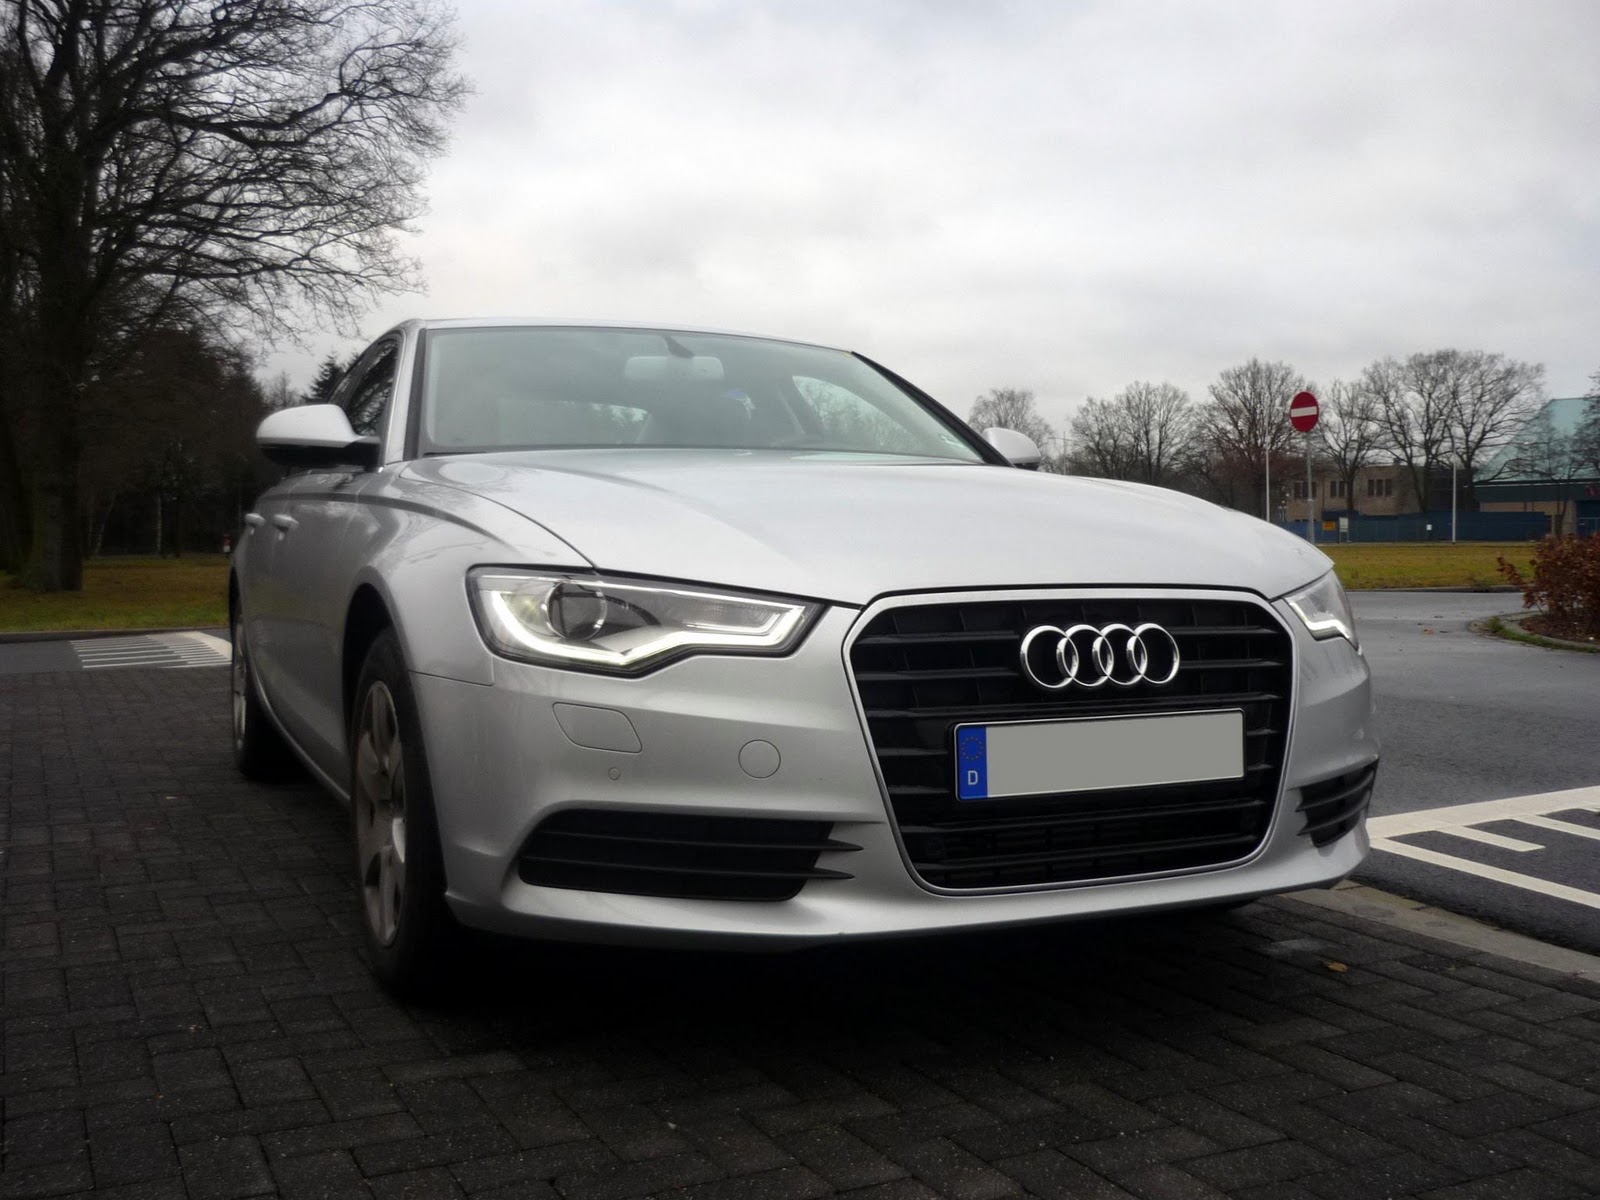 Guitigefilmpjes: Picture update: Audi A6 3.0 TDI Ice Silver